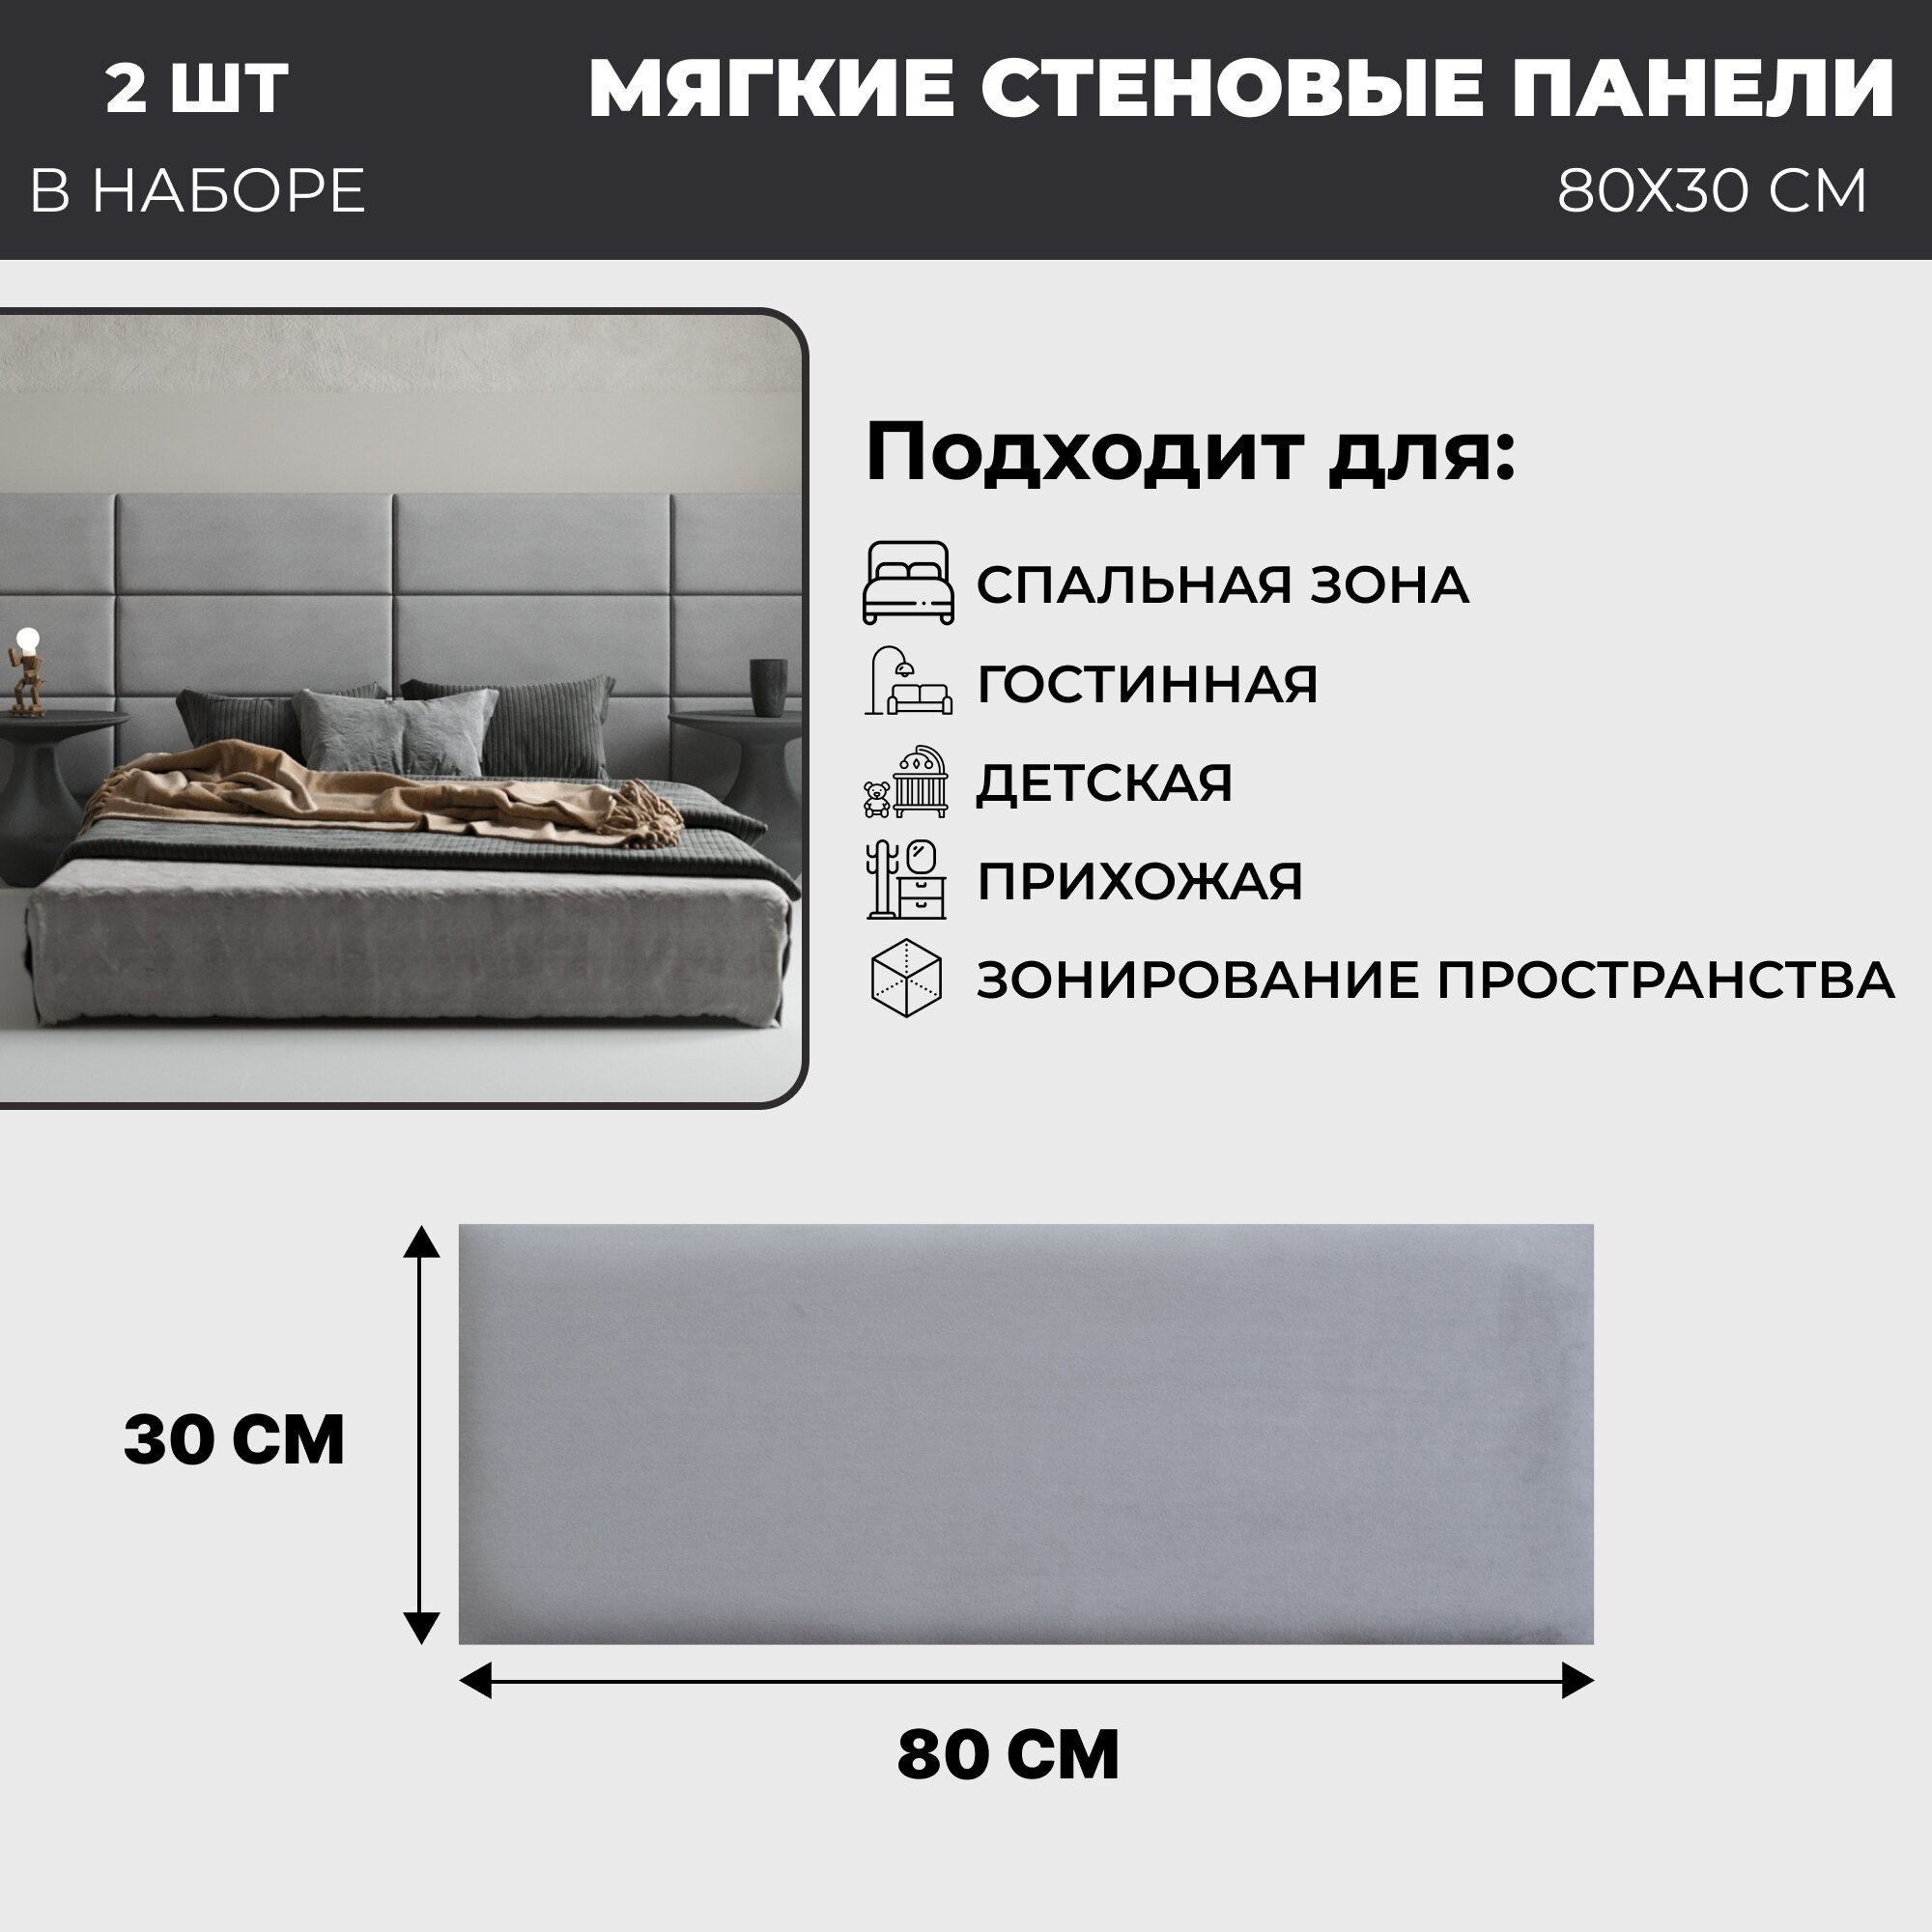 Мягкие стеновые панели, изголовье для кровати 80х30 см, комплект 2 шт, цвет светло-серый